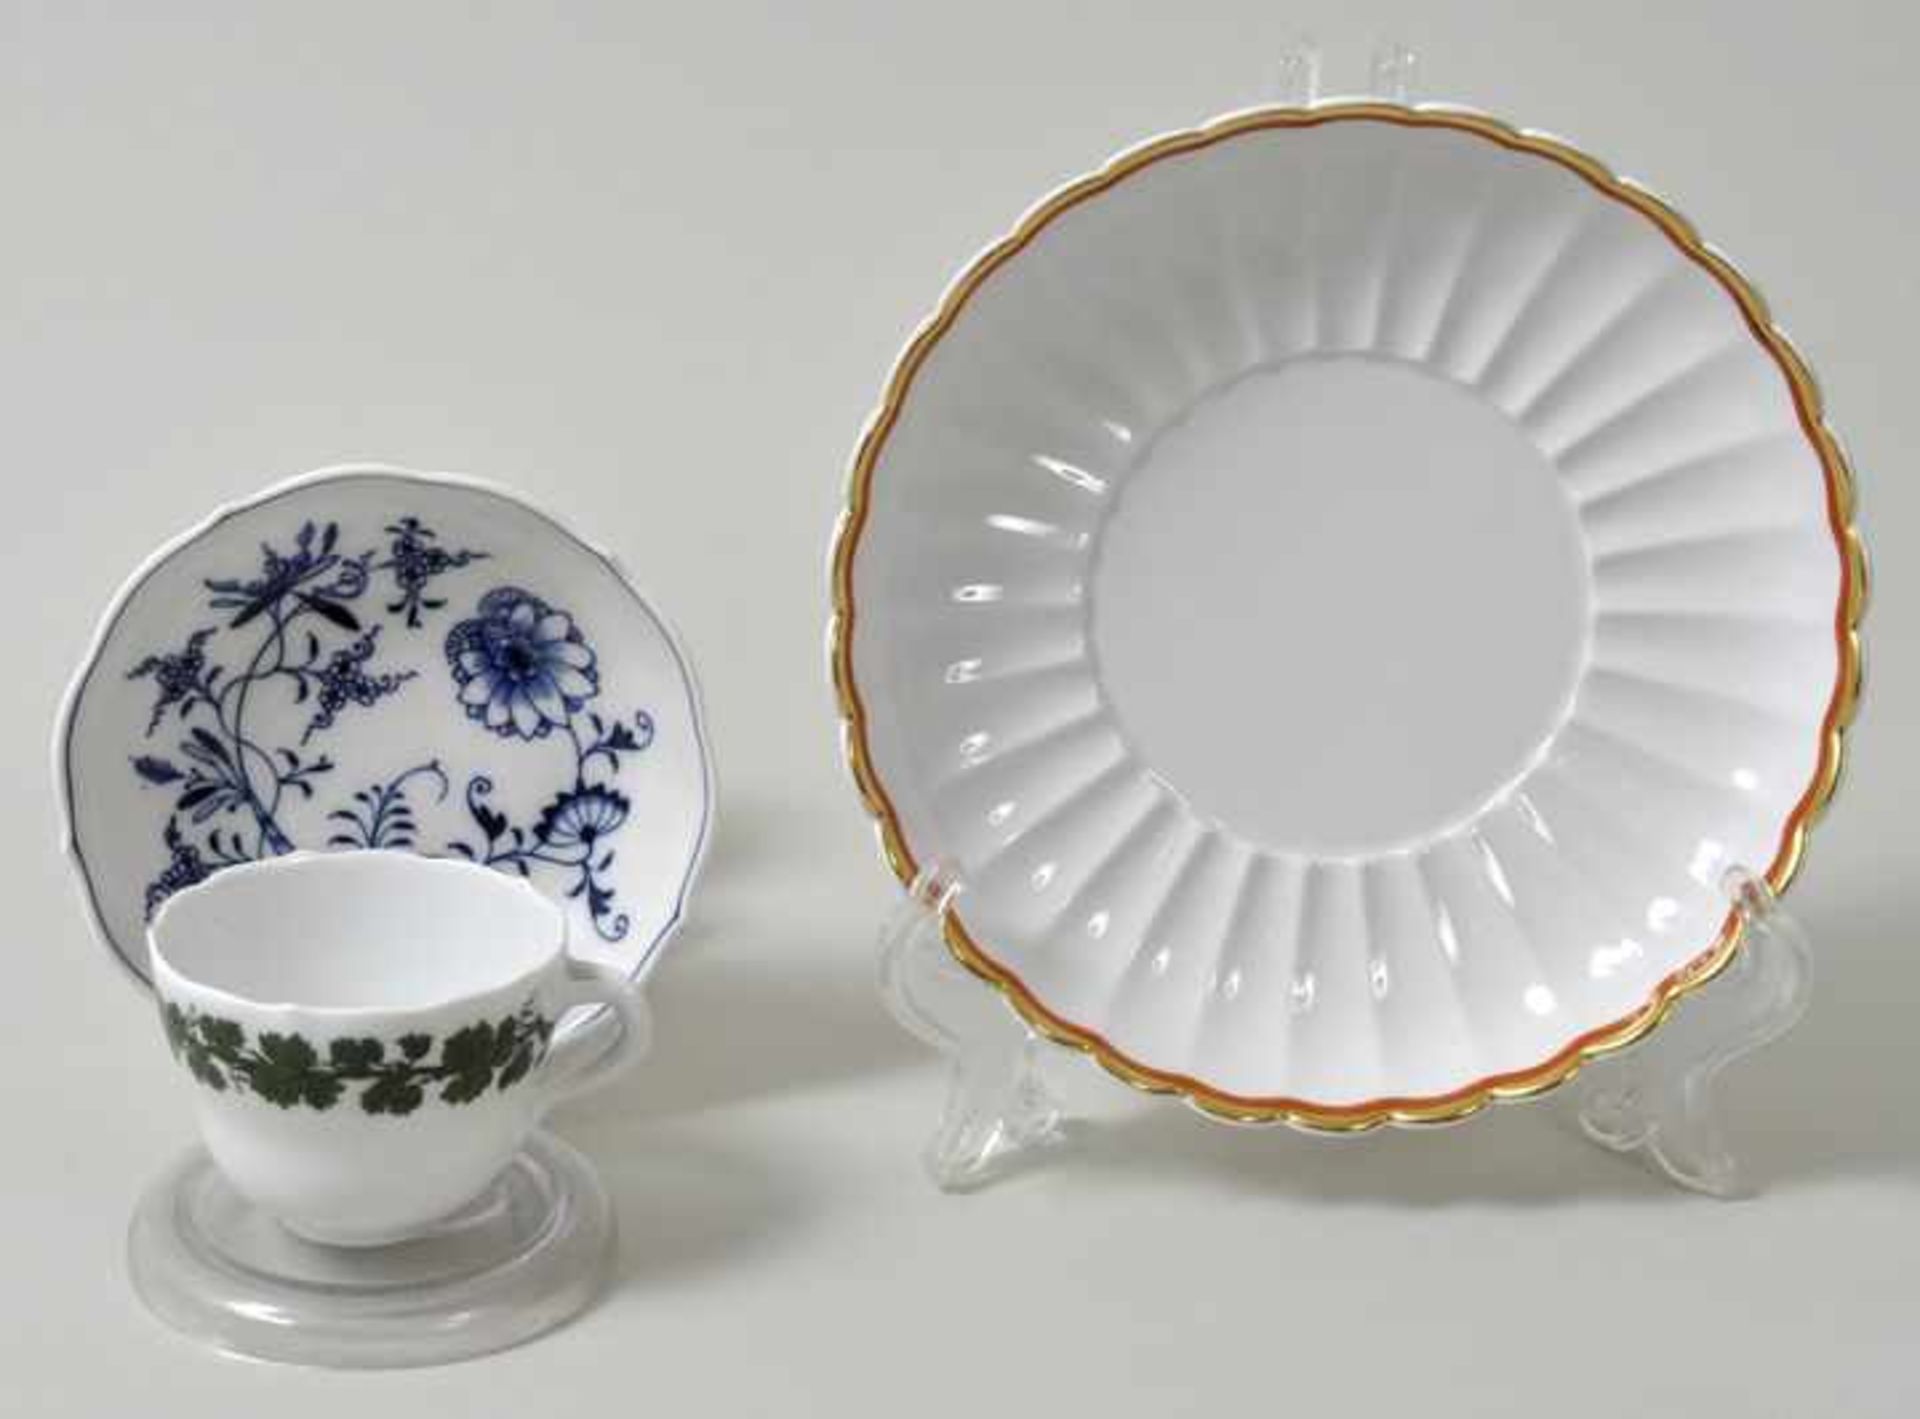 Drei Geschirr-Einzelteile, Meissen, um 1900/ 20. Jh.a) Mokkatasse, Neuer Ausschnitt,